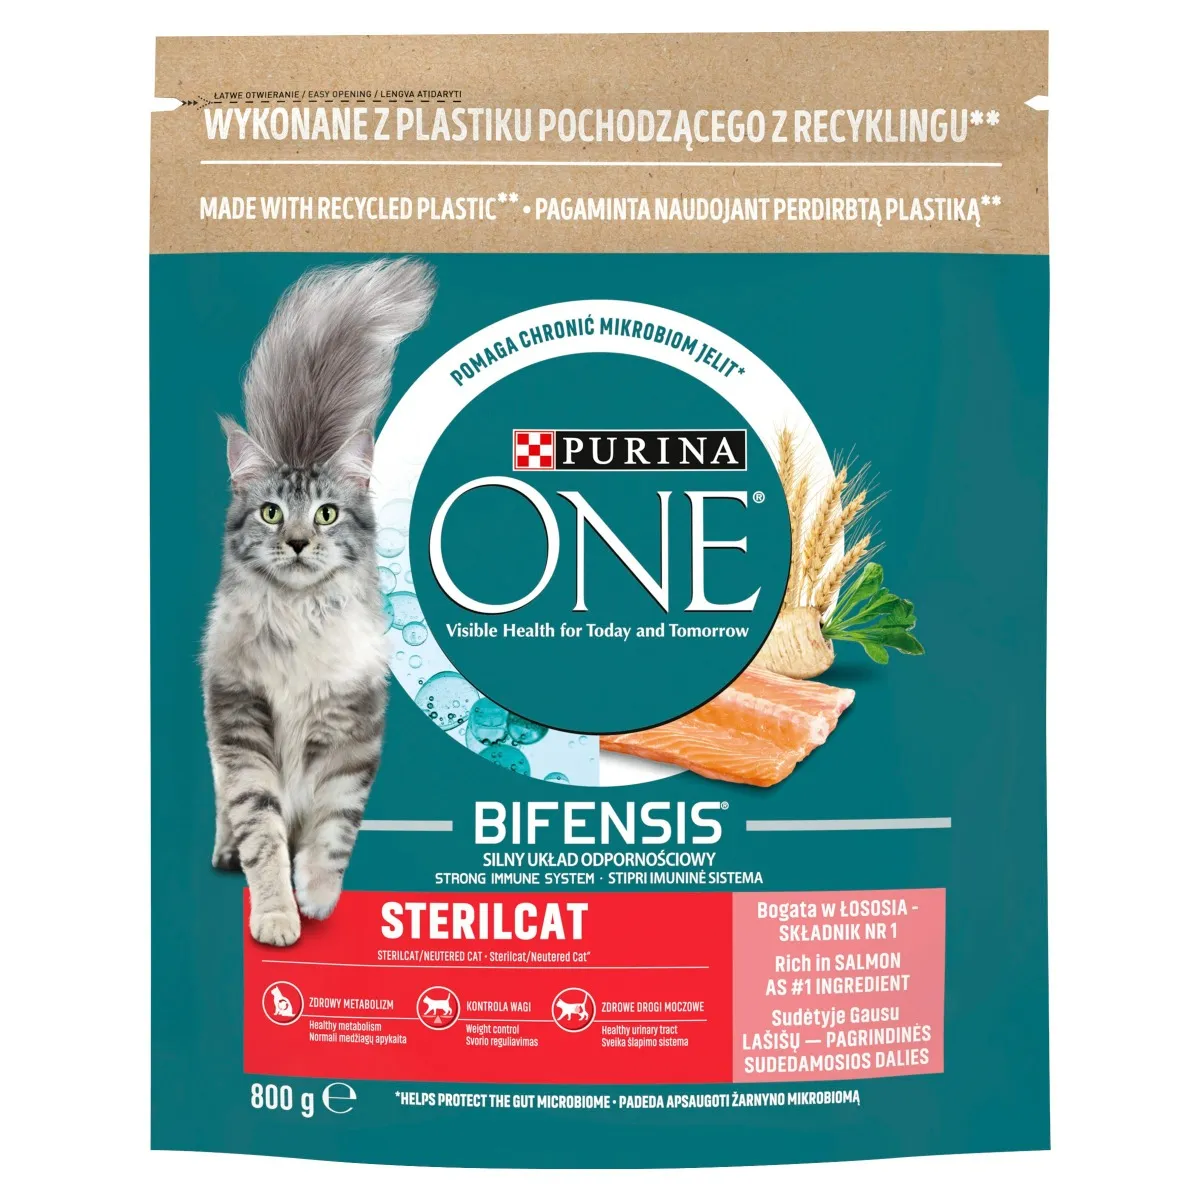 Purina ONE Sterilcat Catsalomon&Wheat, karma dla kotów, 800 g. Data ważności 31.05.2024